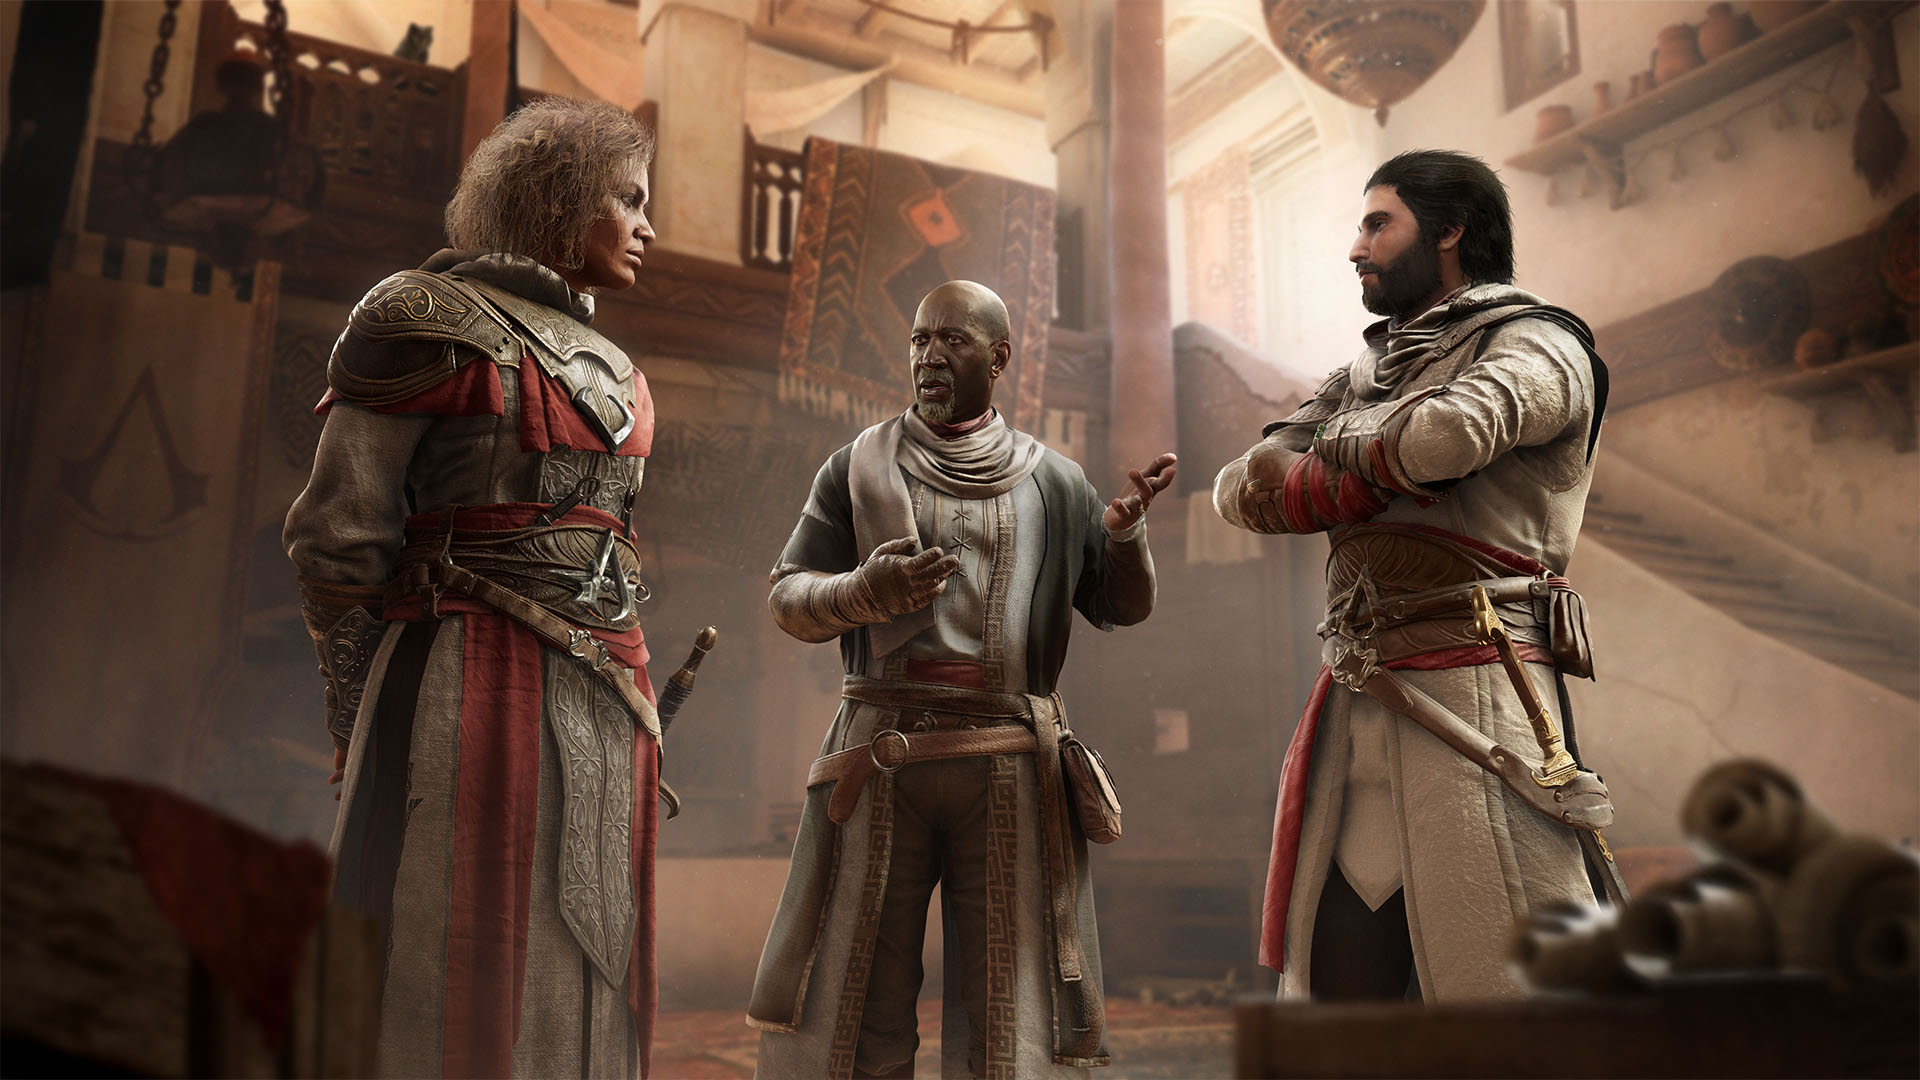 Acheter Assassin's Creed Mirage - Également disponible maintenant sur  Ubisoft+